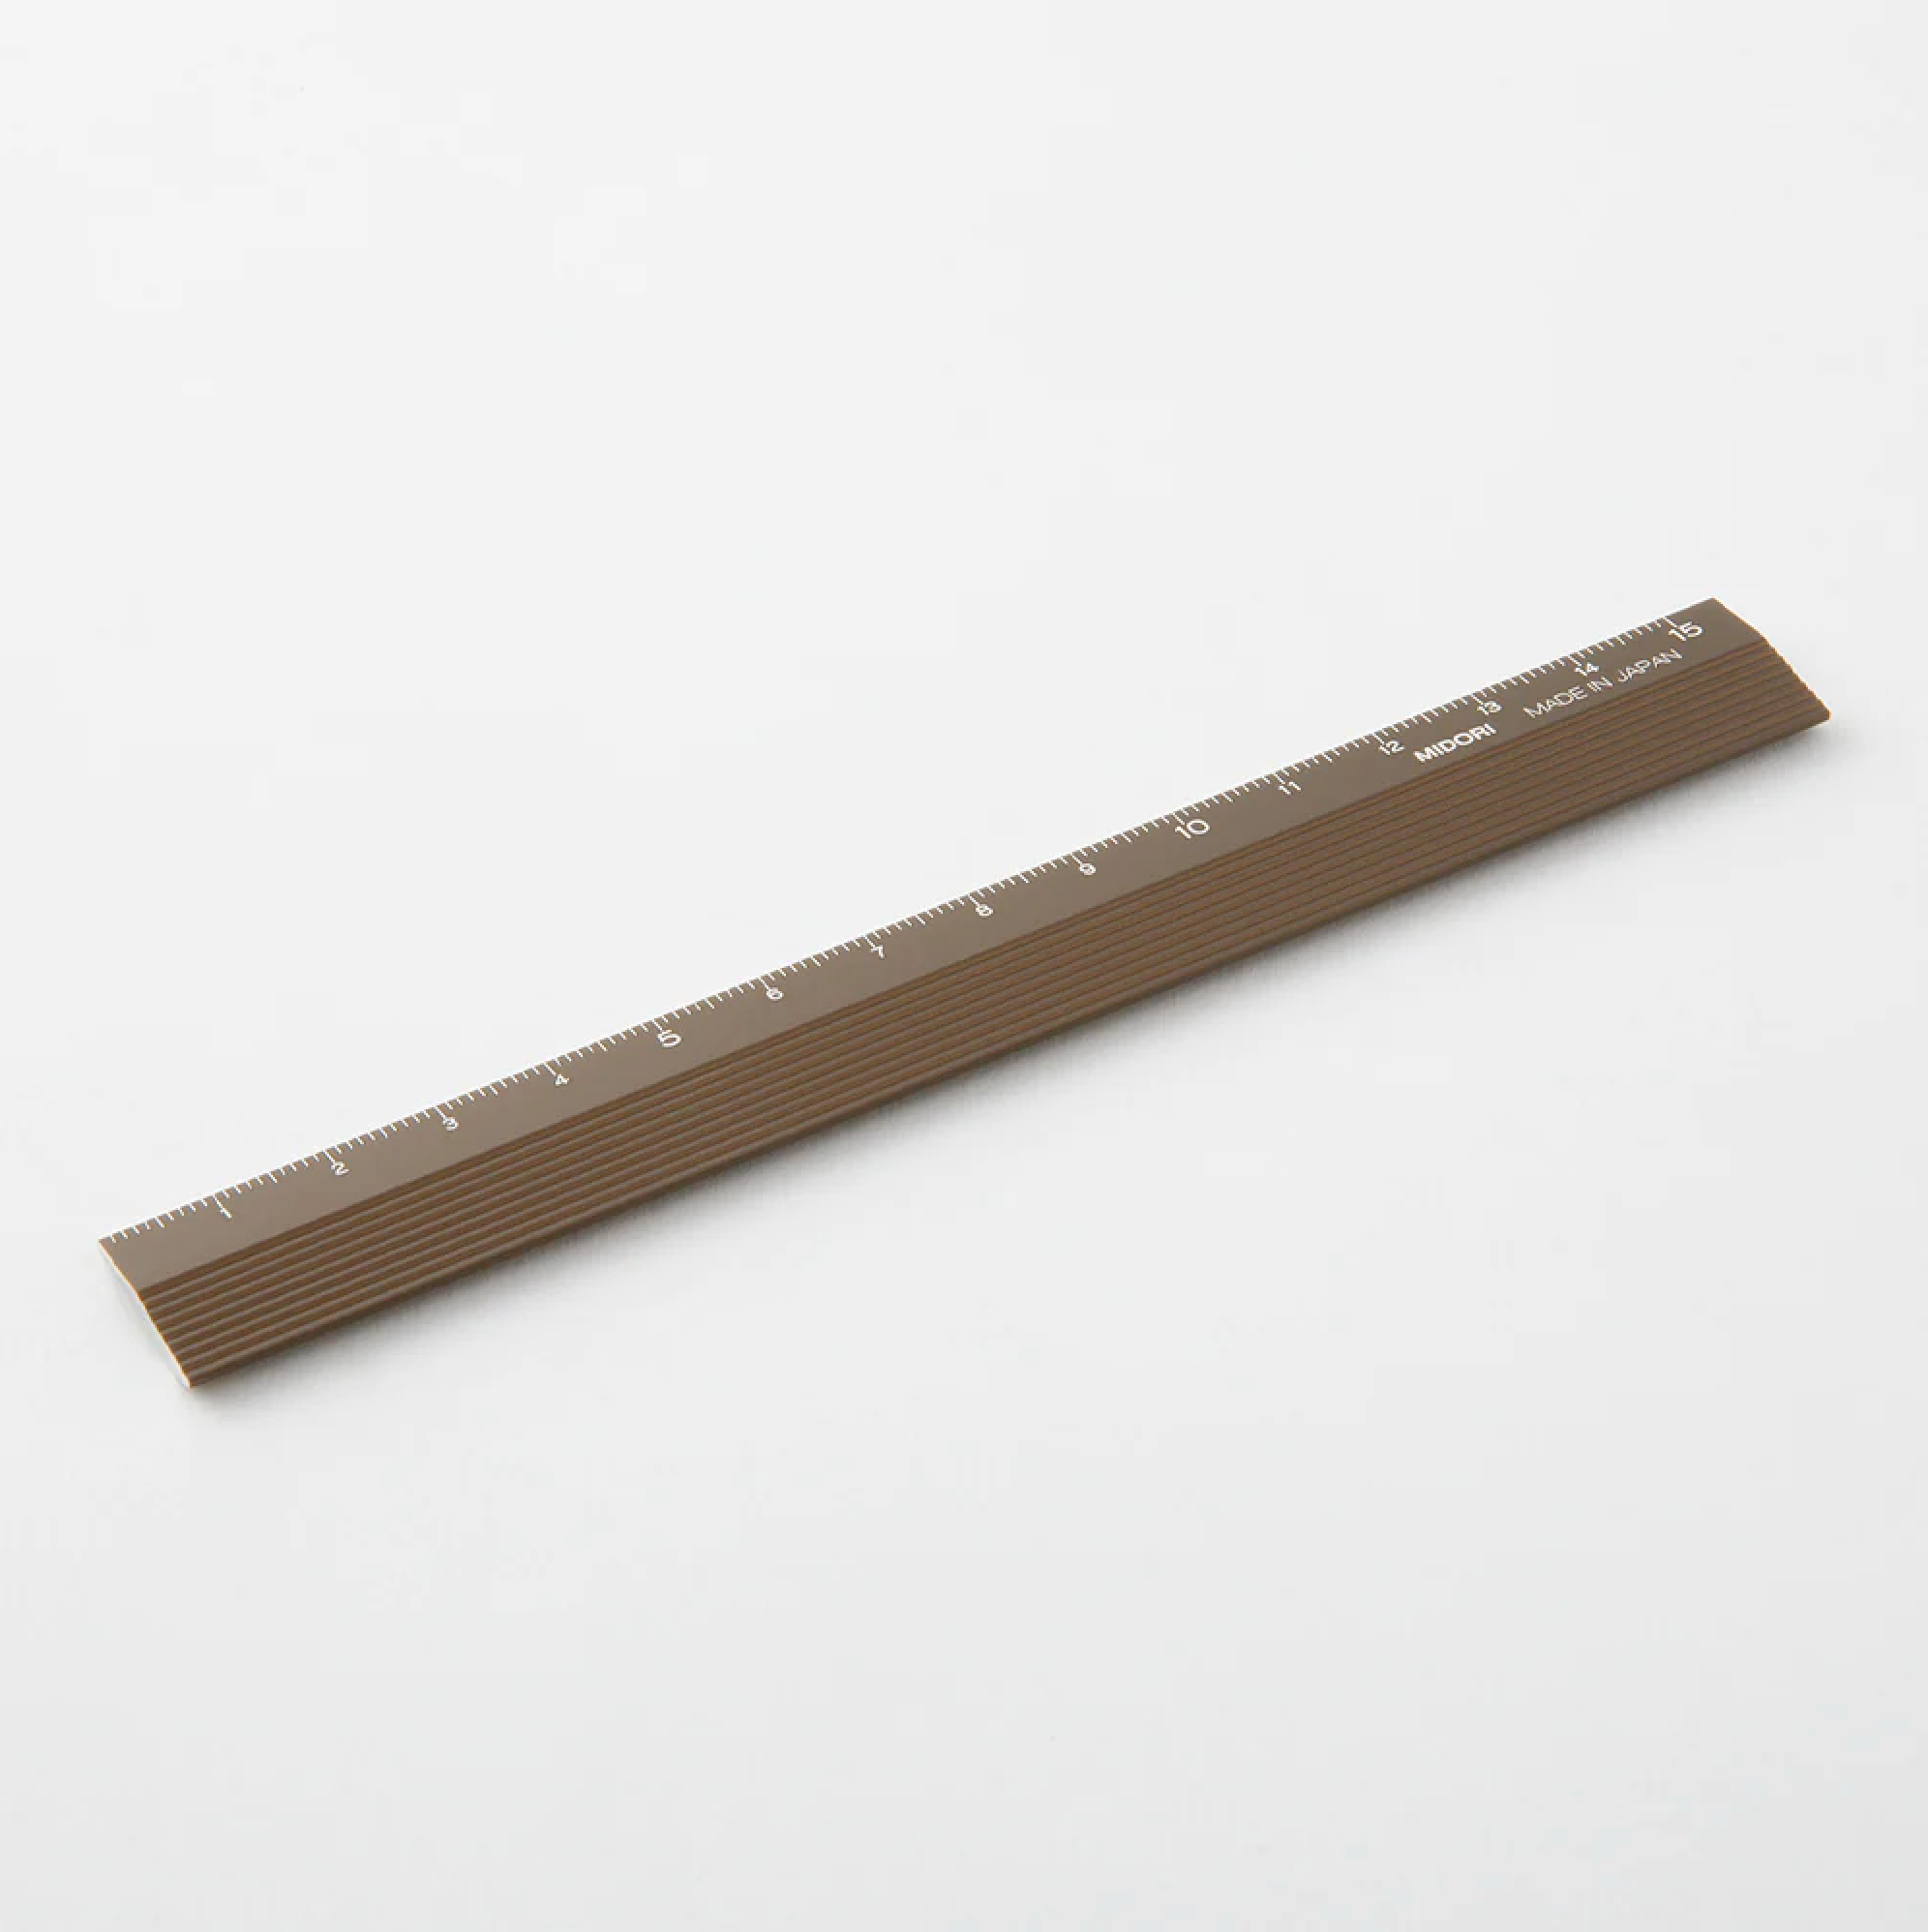 Midori Aluminum Ruler 15 cm